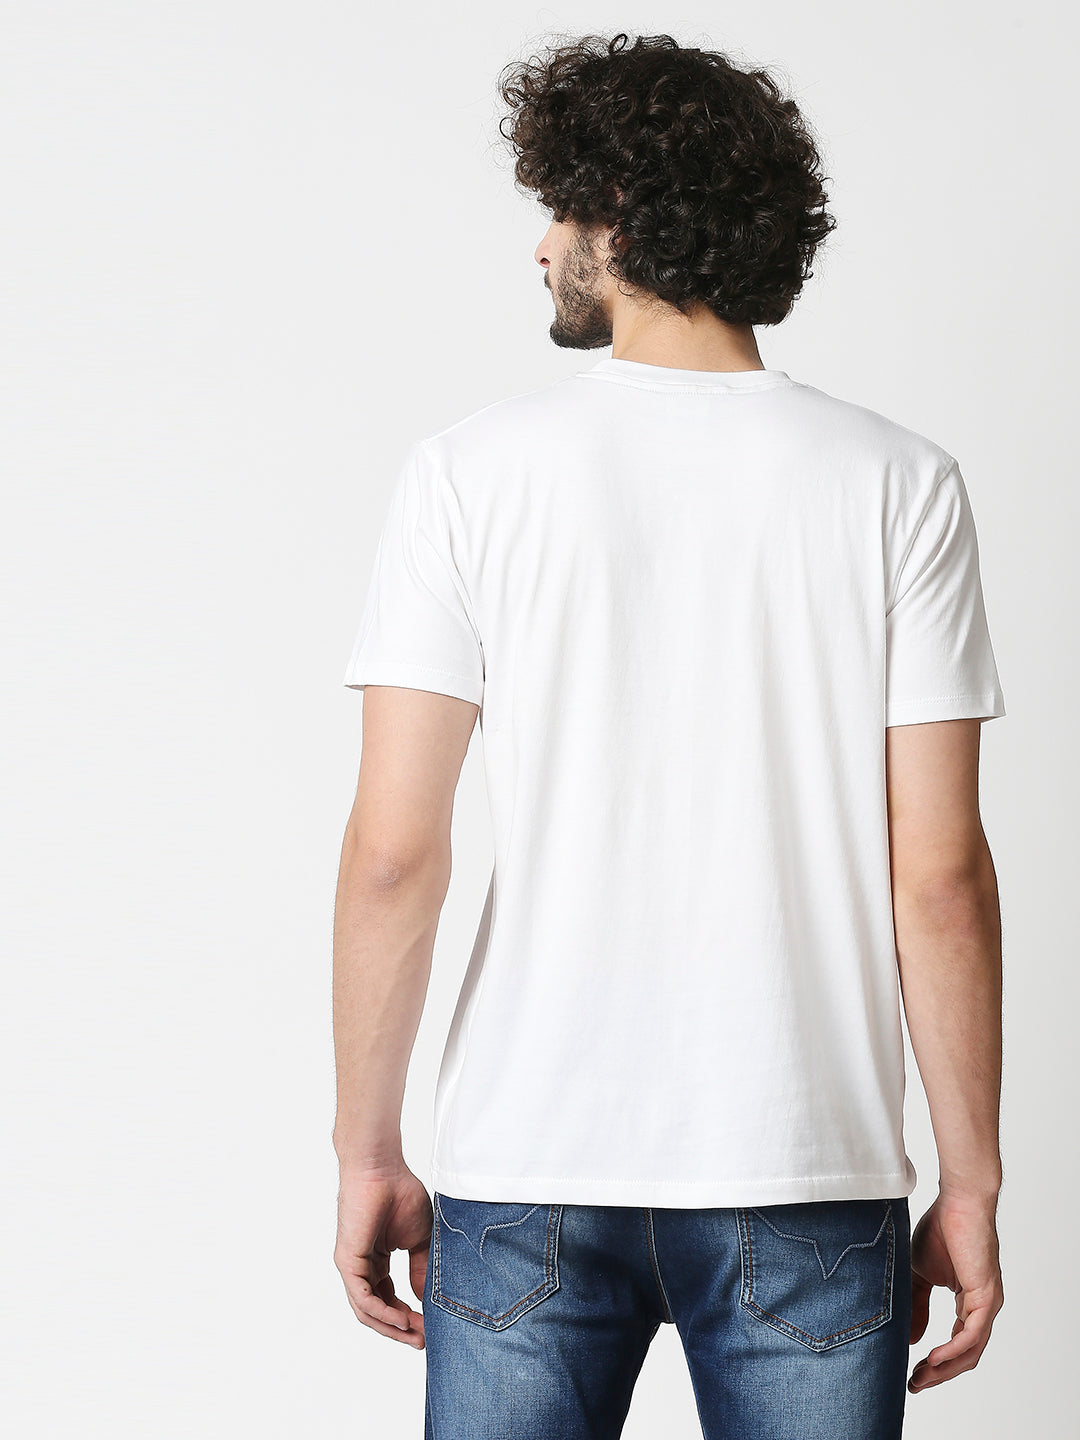 Buy Men's Regular fit White chest print T-shirt.